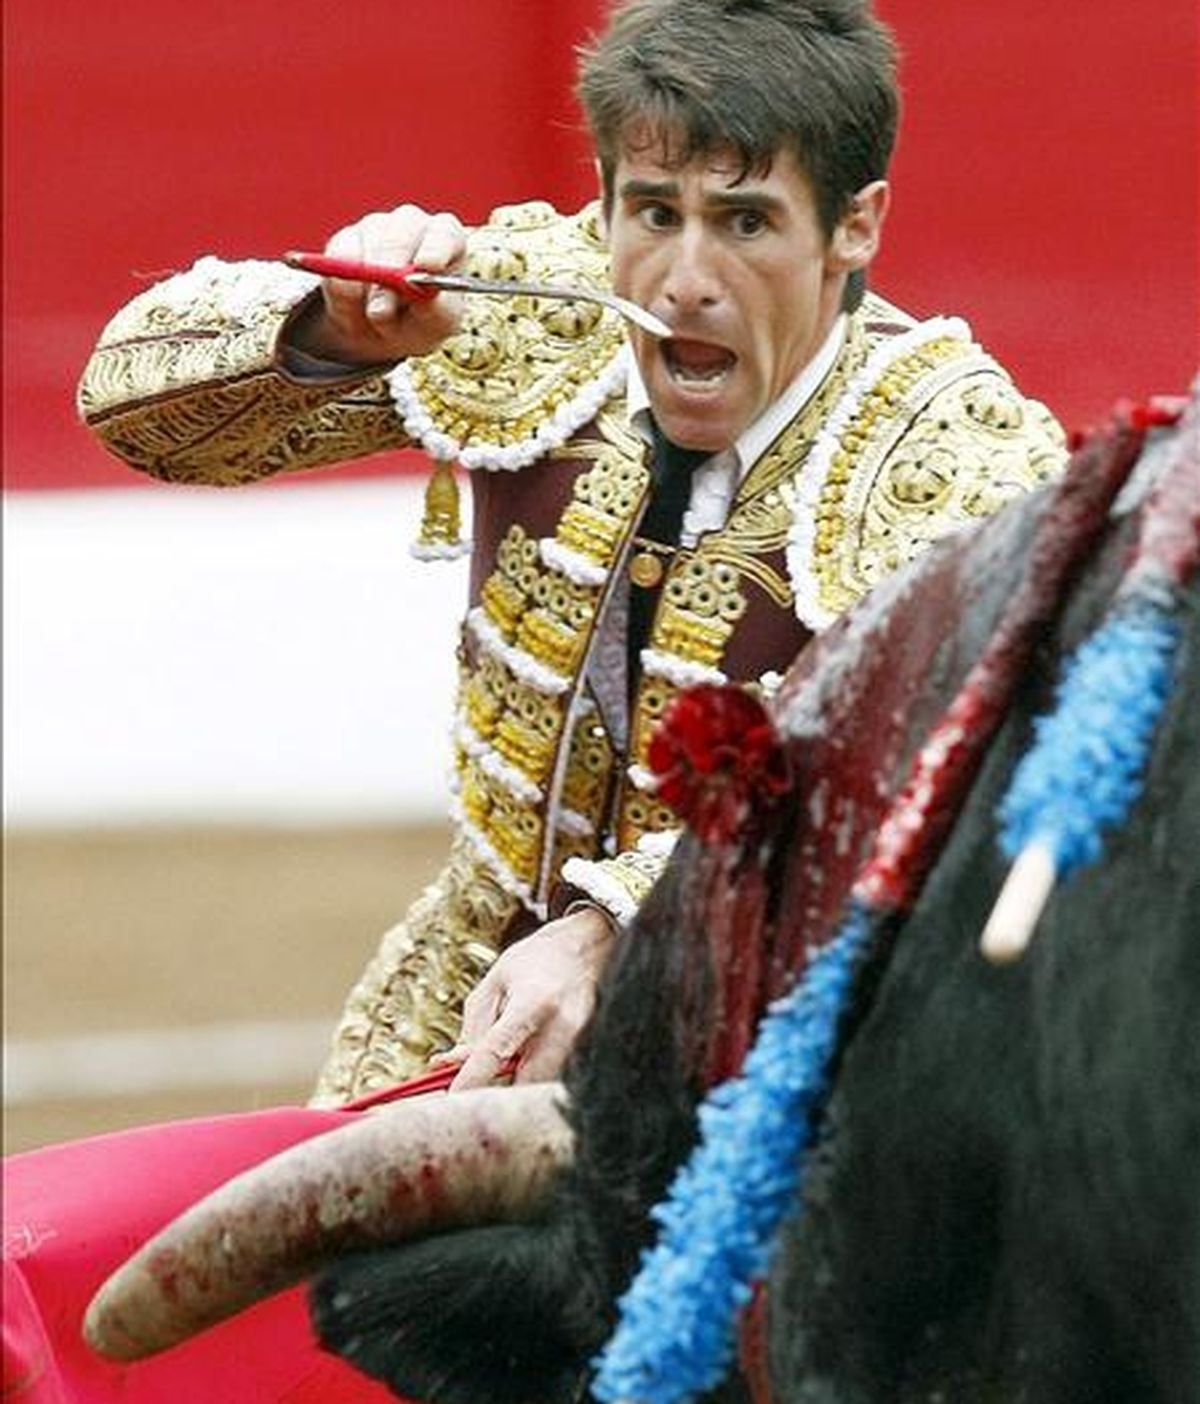 El diestro Francisco Marco entra a matar al segundo toro de su lote durante la quinta corrida de abono de la Feria de Santiago celebrada en 2009 en Santander. EFE/Archivo